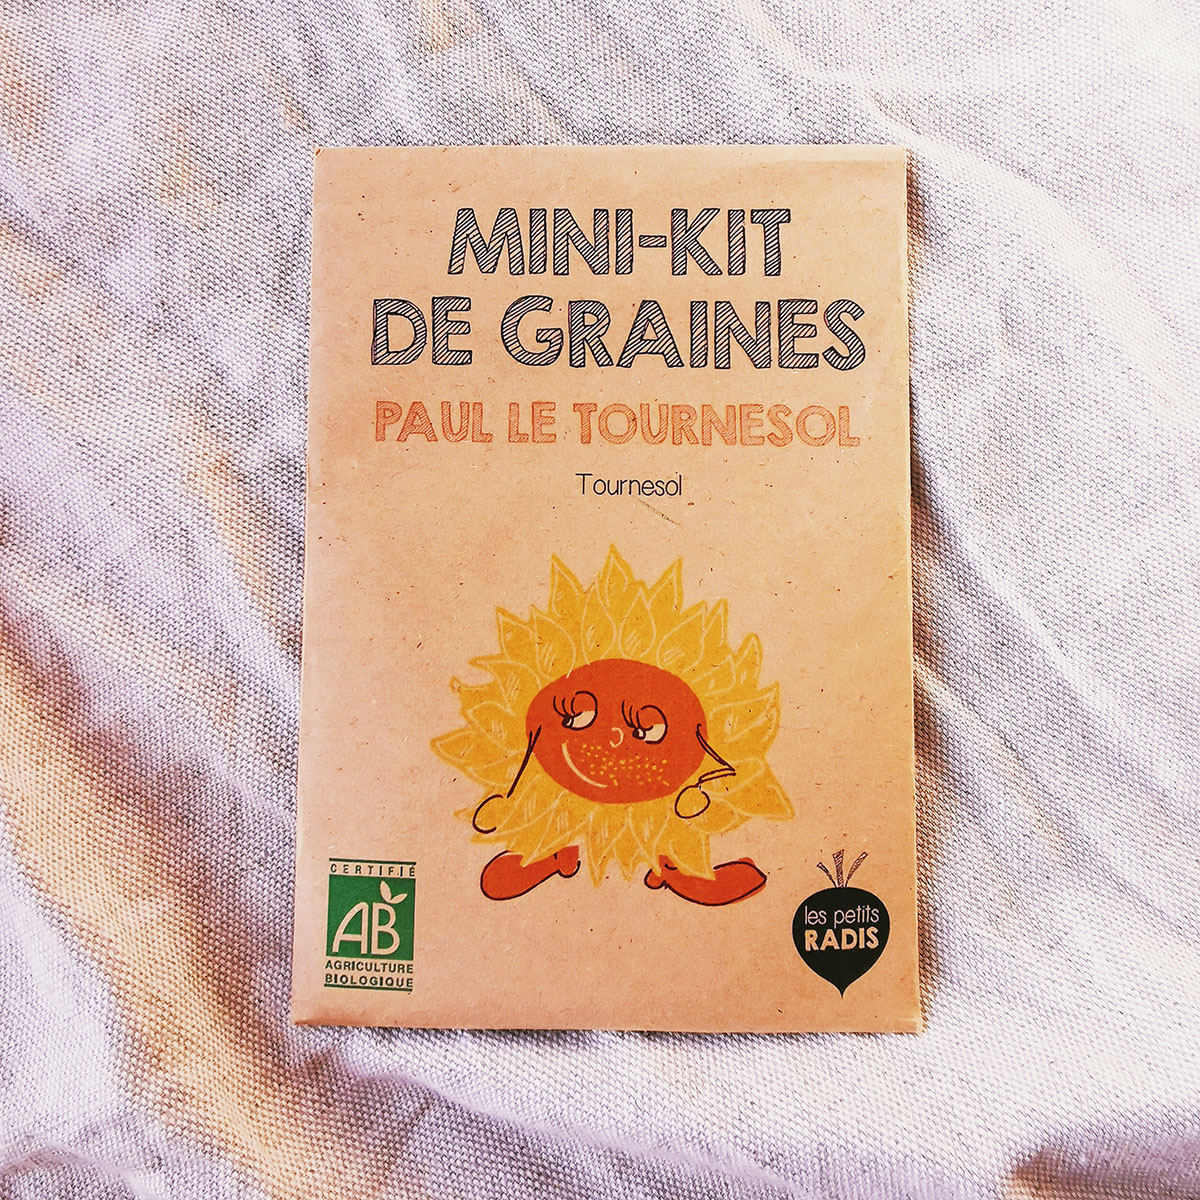 Mini kit de graines bio - Paul le tournesol